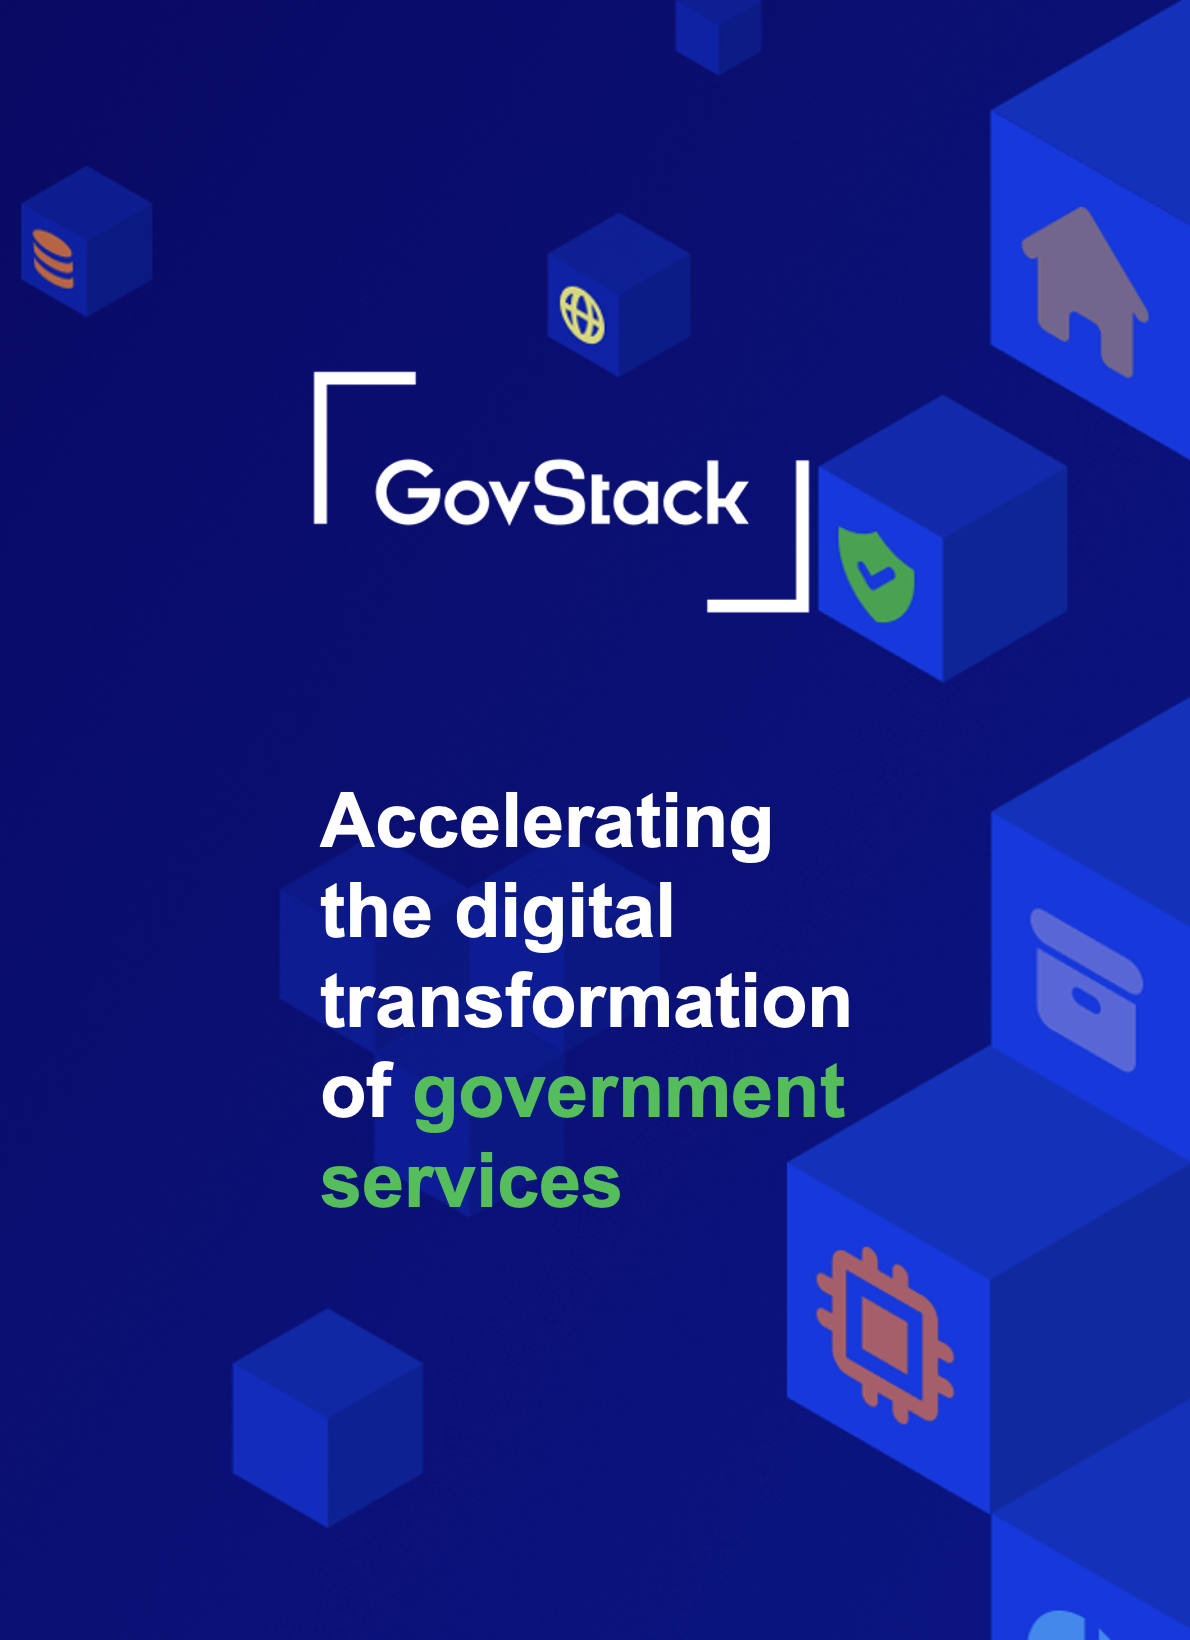 GovStack 计划协助政府建立可持续的数字基础设施并提供以人为本的数字服务。了解如何受益和为此做出贡献！